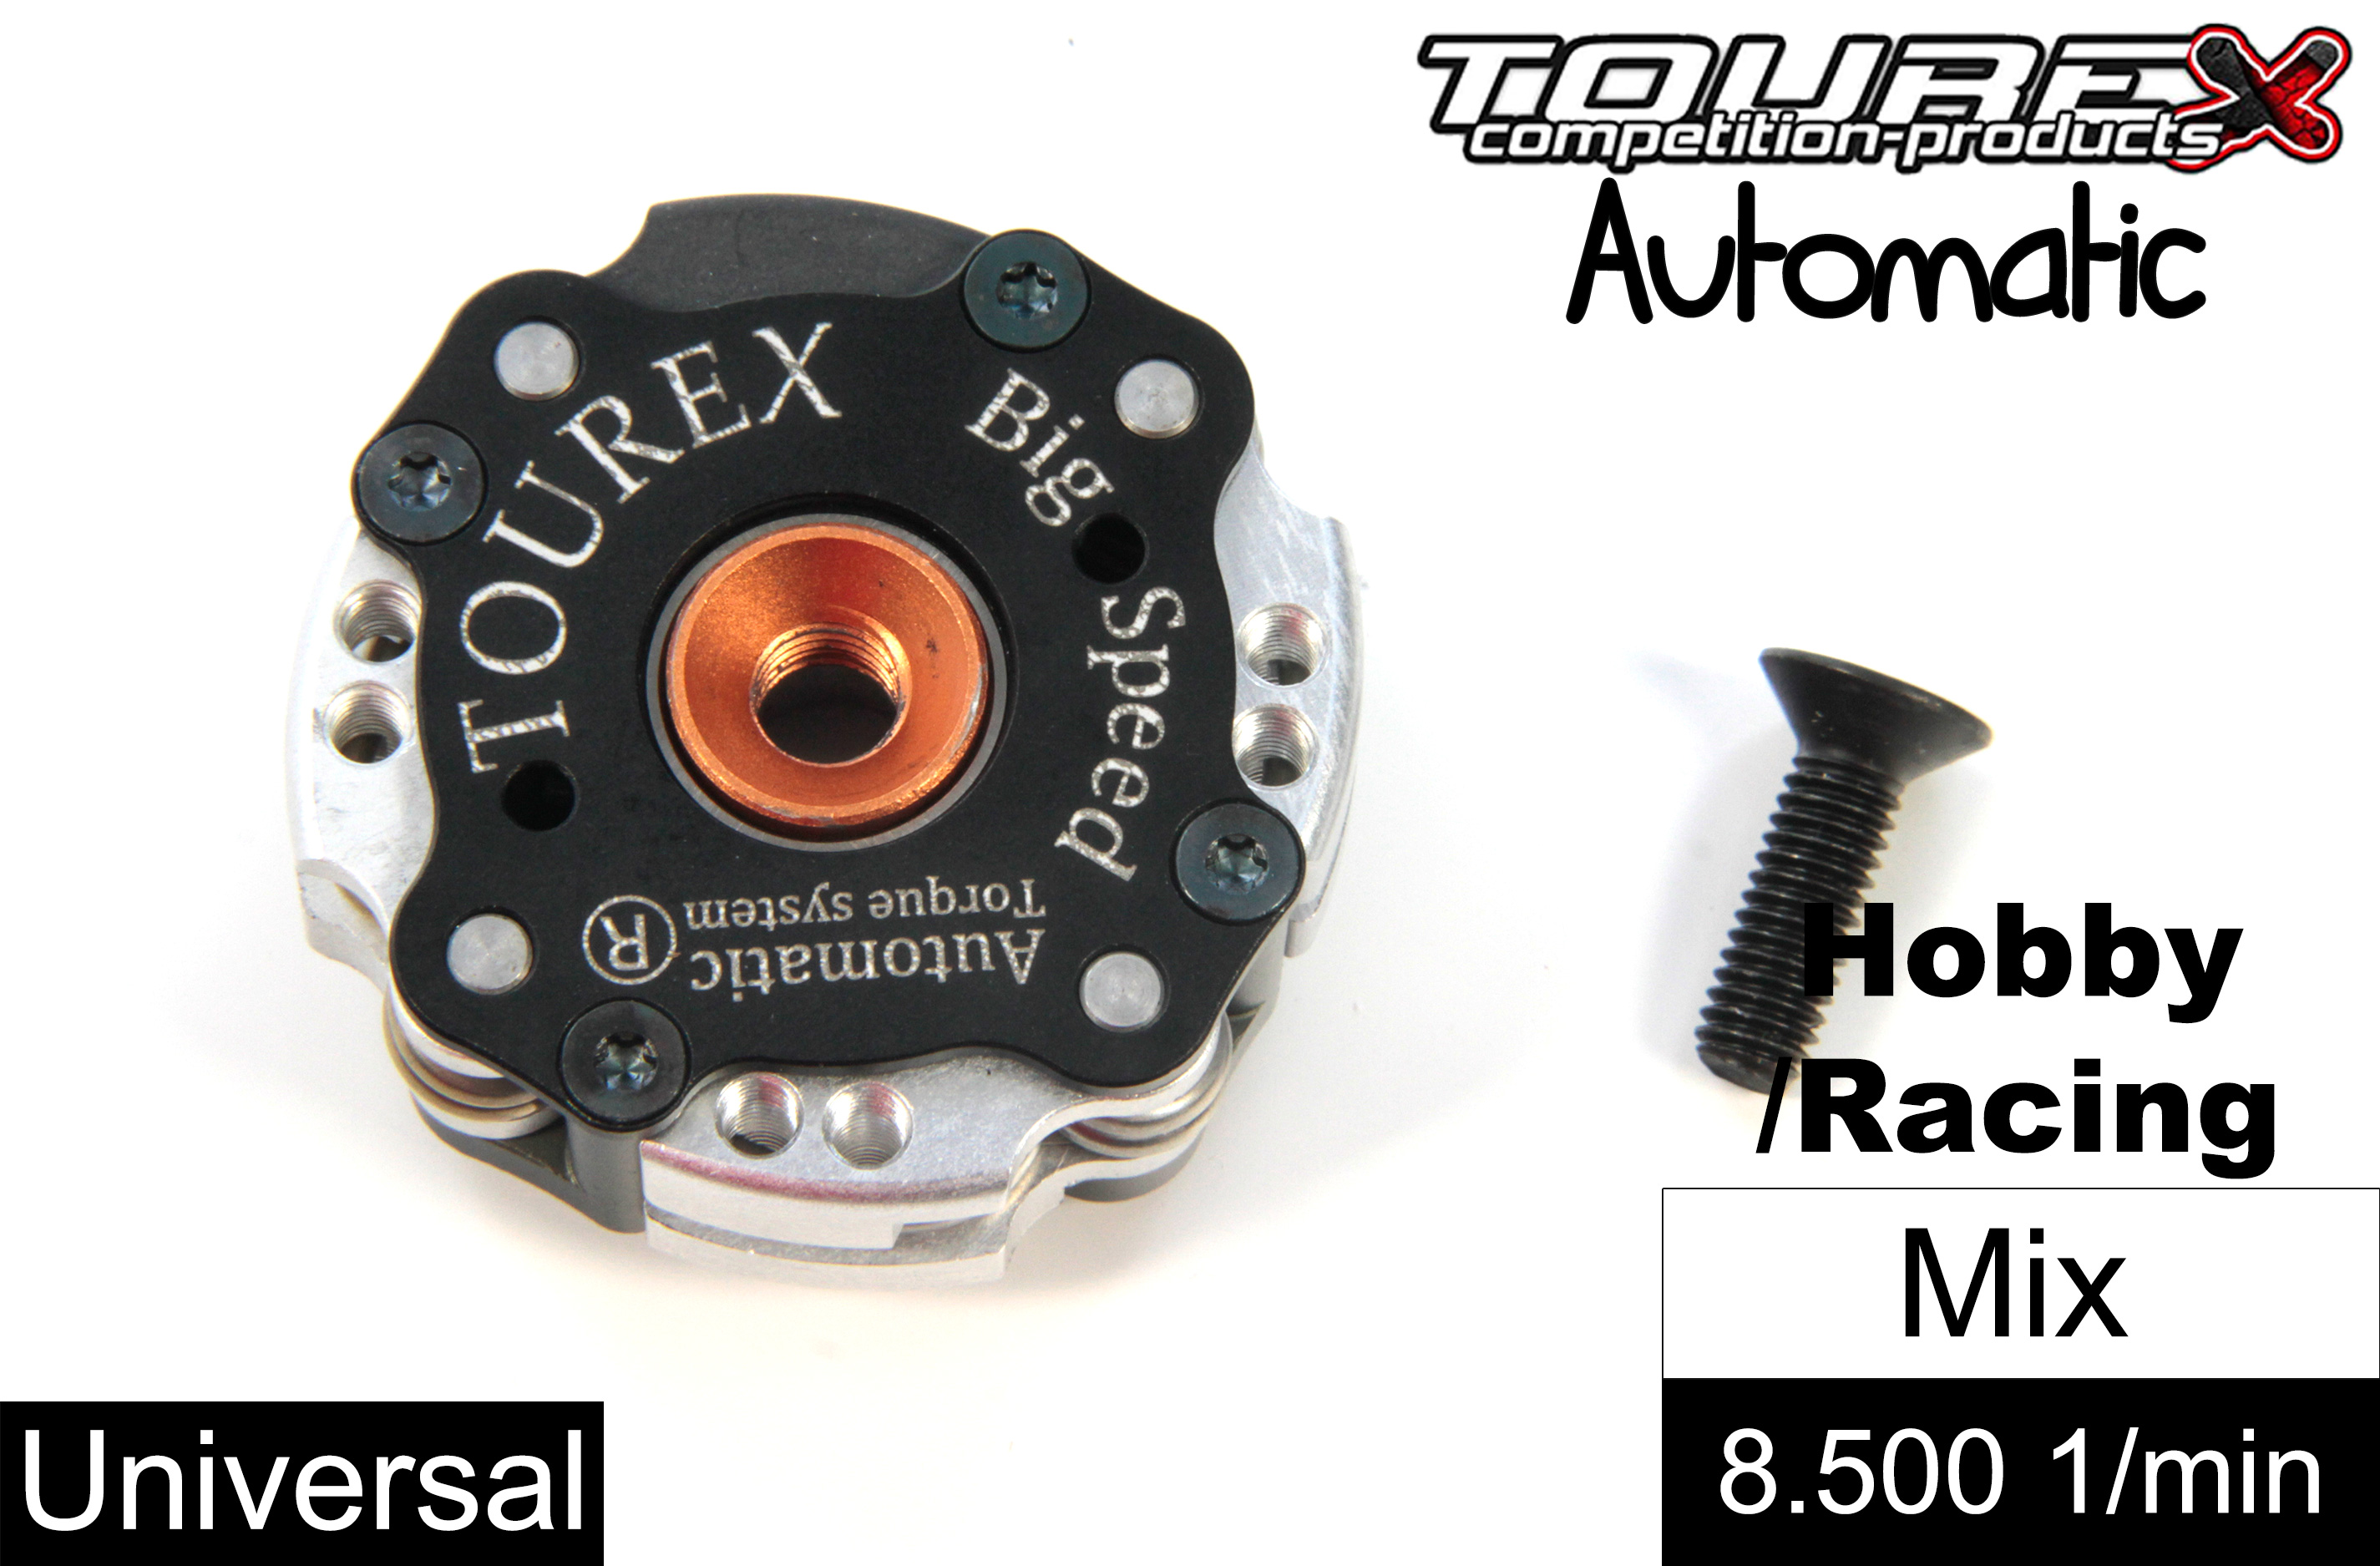 TXLA-910-L-MIX Tourex Big-Speed Automatic für FG/HPI/Losi/Smartech und viele mehr